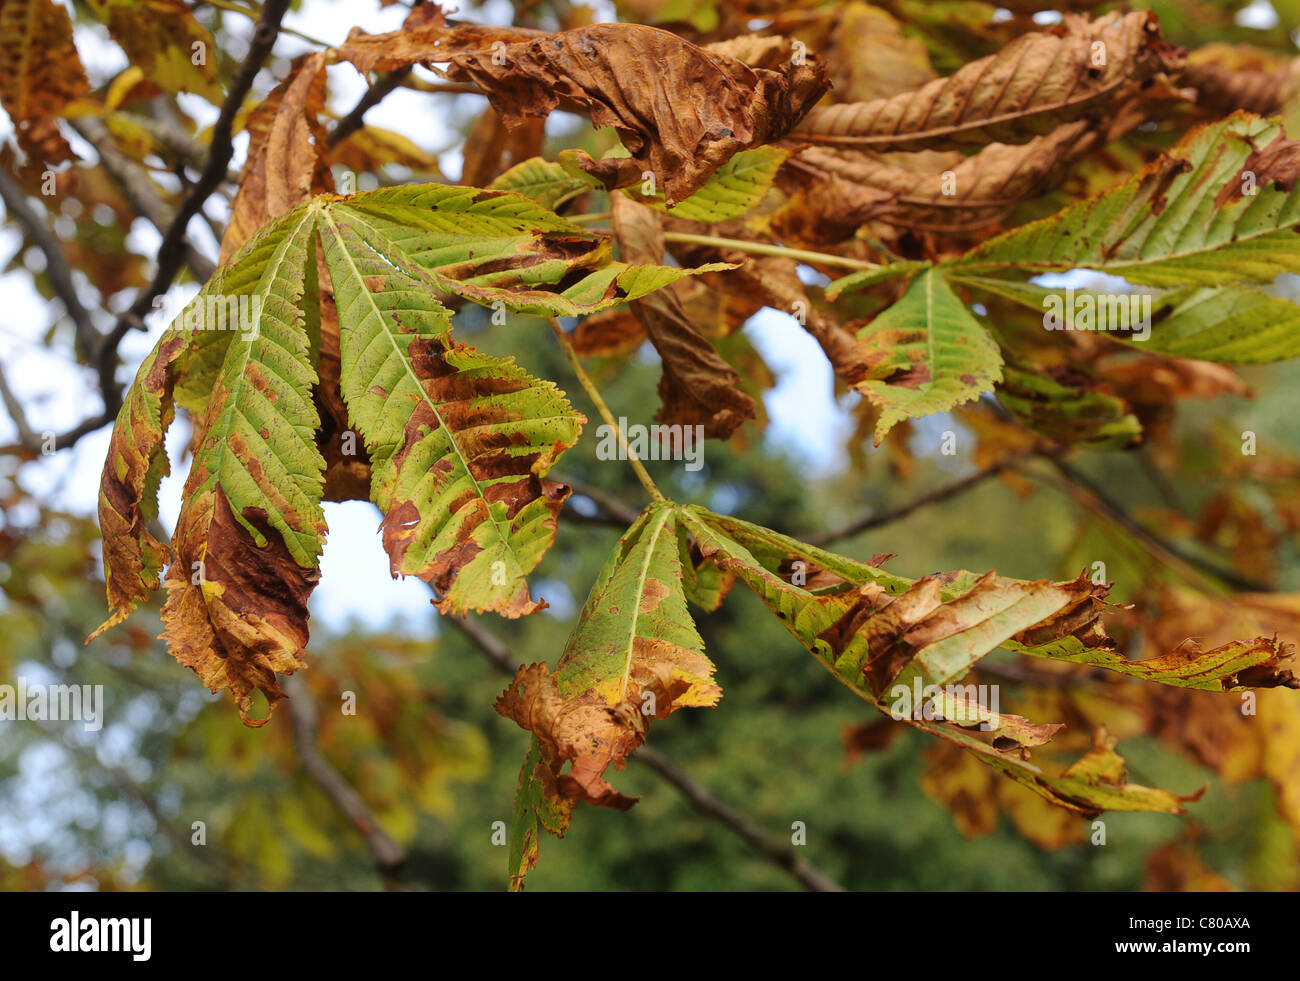 Marronnier malade (Aesculus hippocastanum) montrant des feuilles causée par motif brun châtaigne mineuse des feuilles Banque D'Images